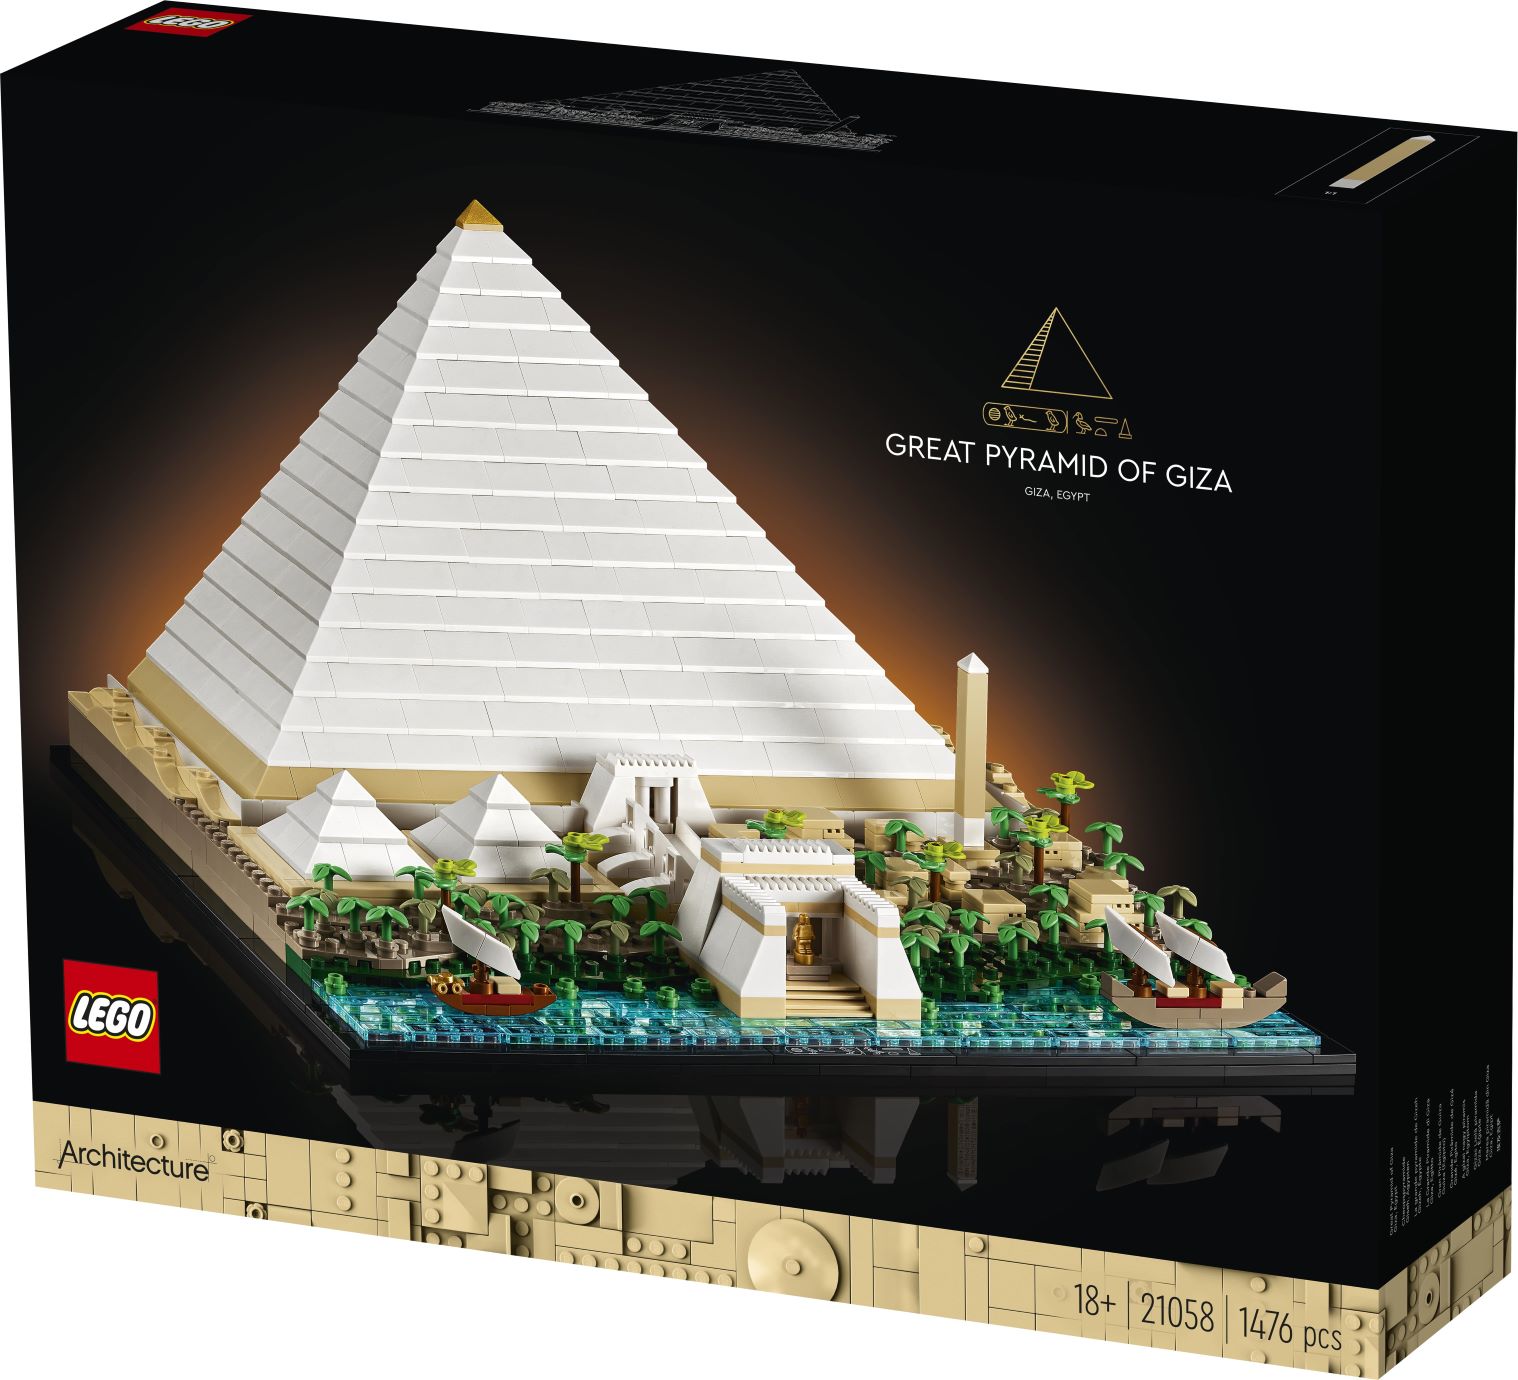 לגו ארכיטקטורה – הפירמידה הגדולה של גיזה 21058 - הממלכה שלי